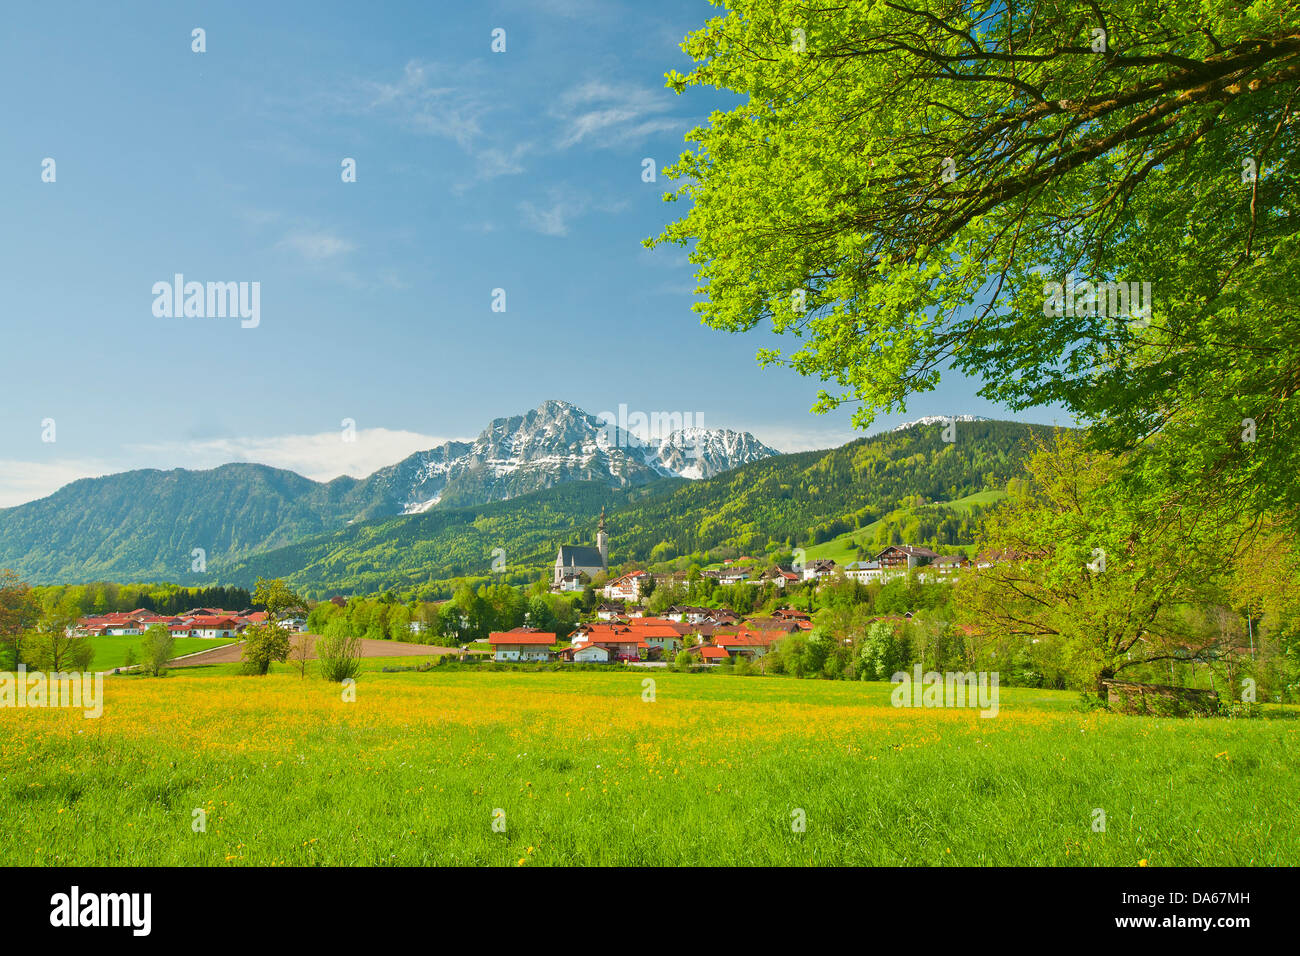 Germany, Europe, Bavaria, Upper Bavaria, Rupertiwinkel, meadow, village, Hochstaufen, Zwiesel, spring, agriculture, agrarian, fl Stock Photo